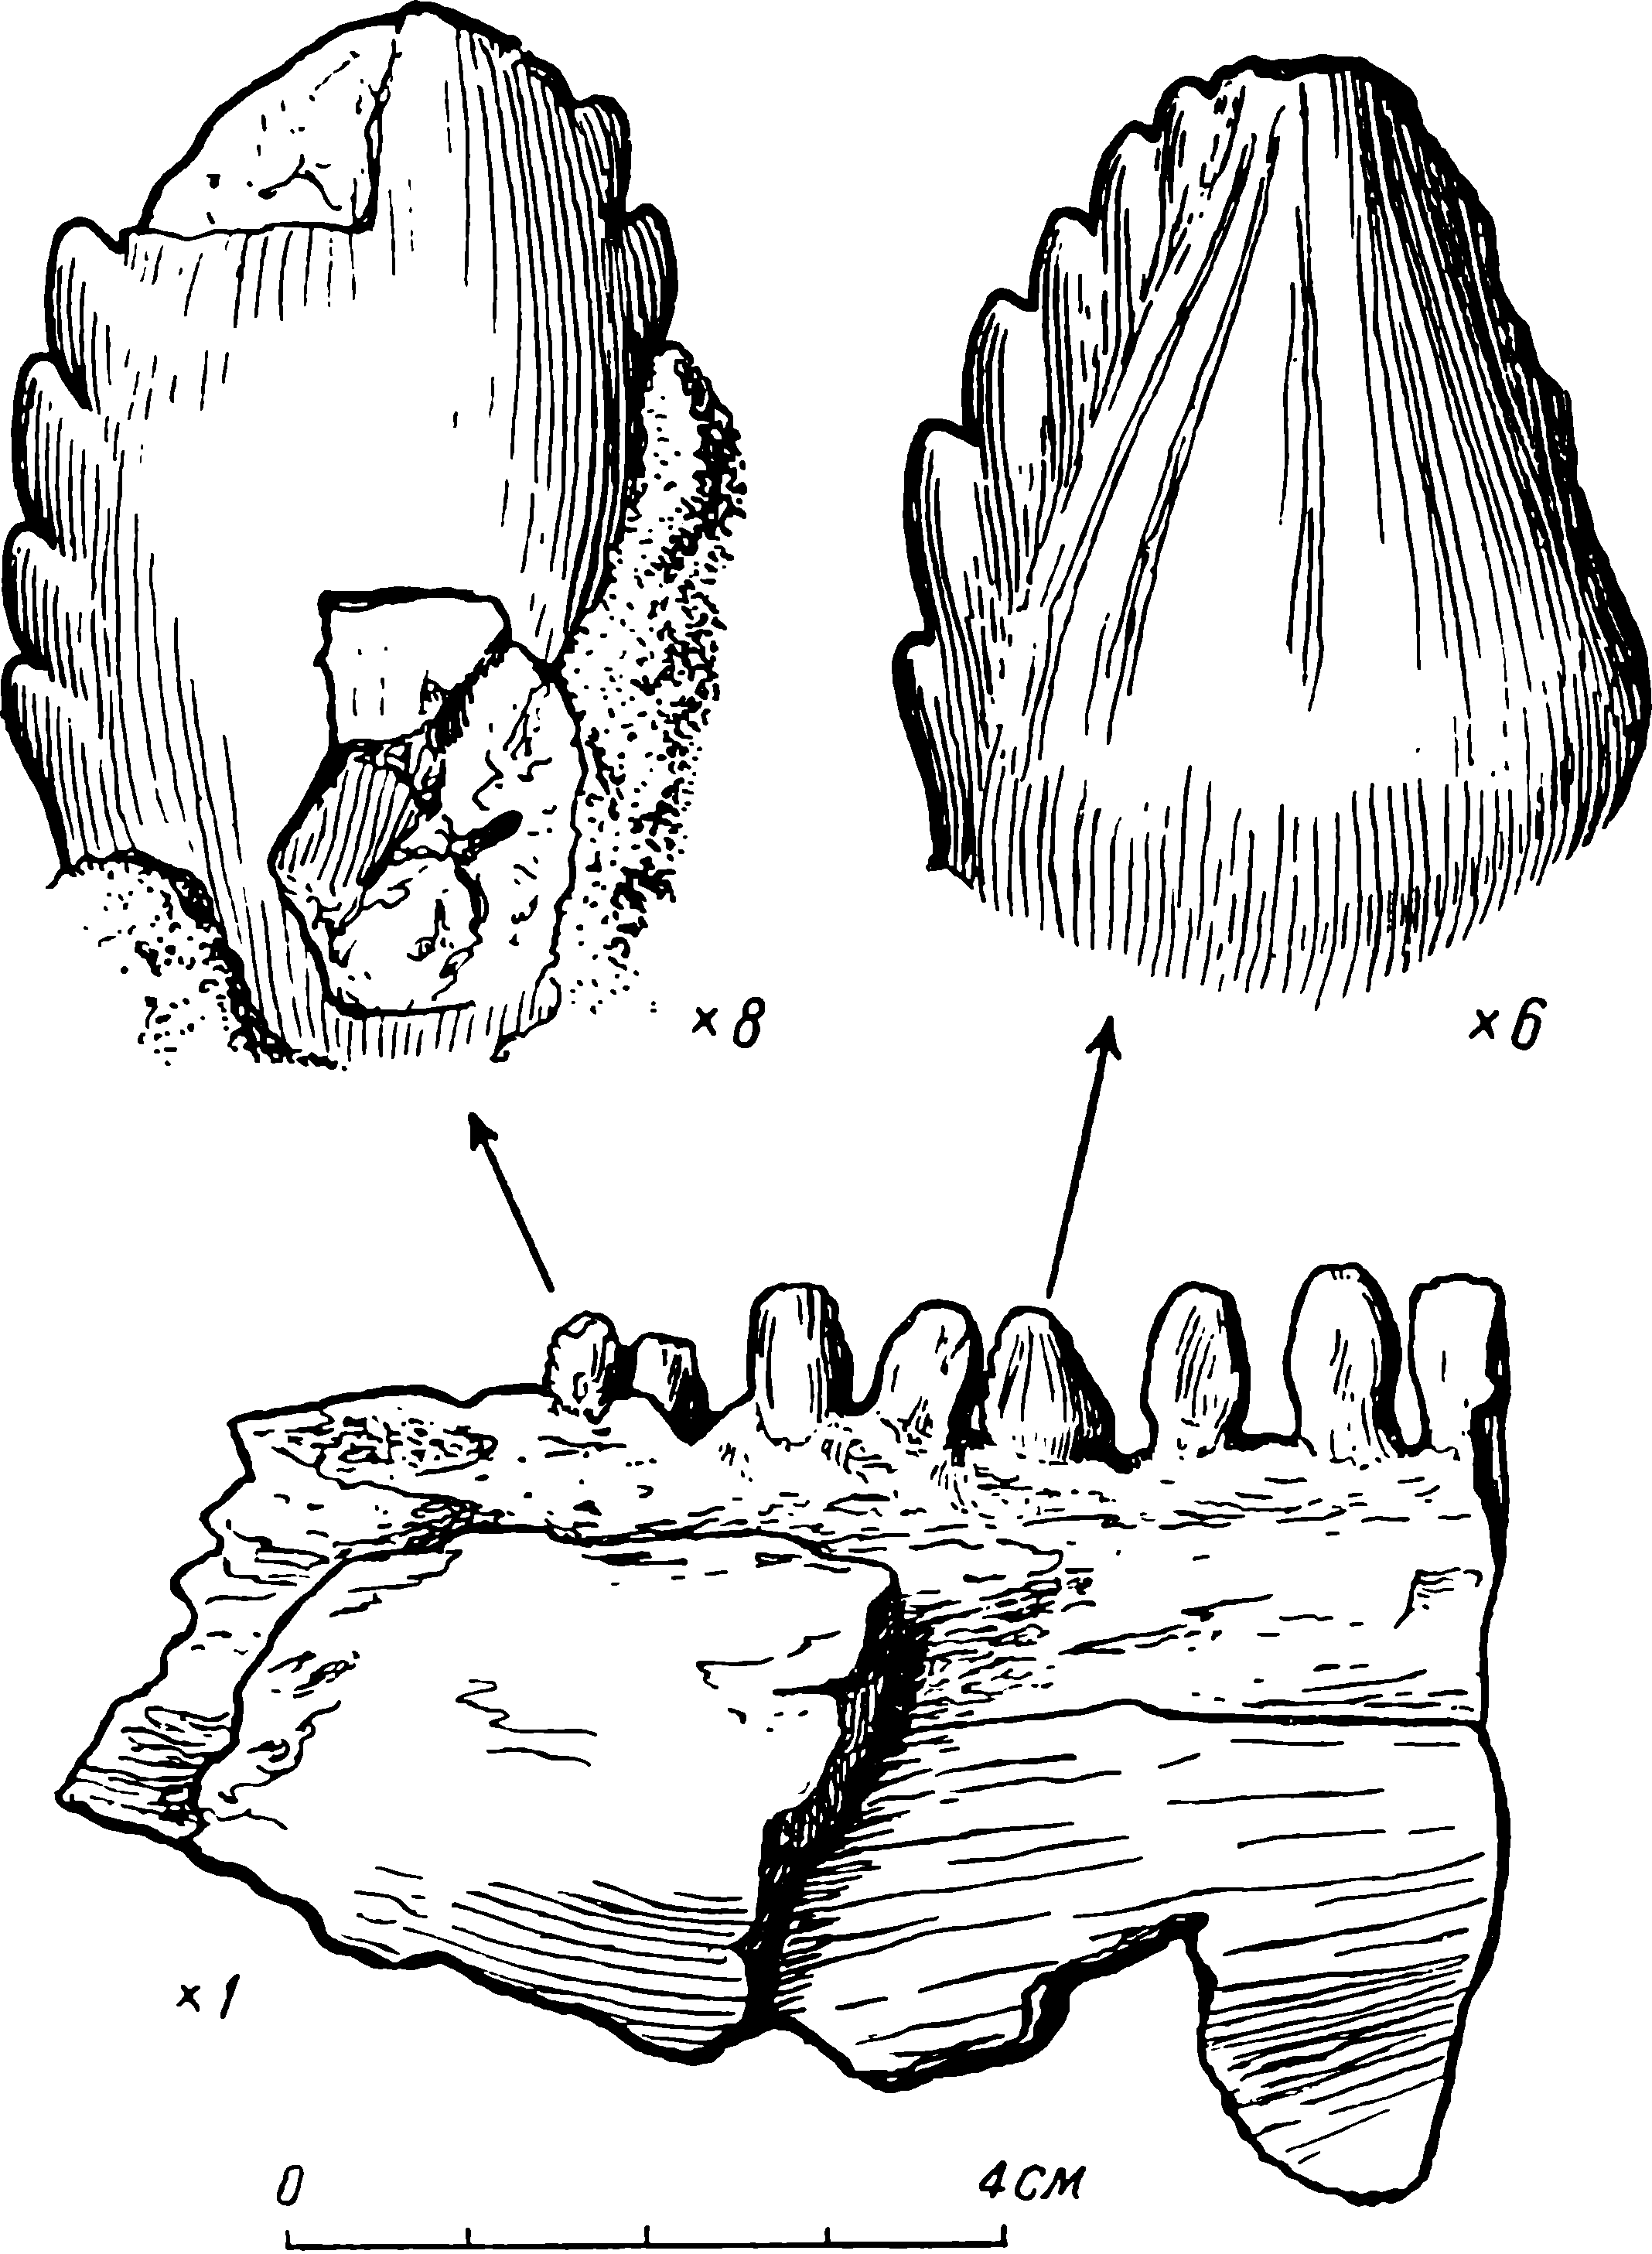 Рис. 69. Parabradysaurus udmurticus gen. et sp. nov. Фрагмент нижней челюсти, ЦНИГР Музей № 2/ 1727. В верхней части рисунка показаны в увеличенном виде зубы, отмеченные стрелками на фрагменте челюсти. Увеличения зубов относительно изображения челюсти обозначены цифрами под каждым из зубов